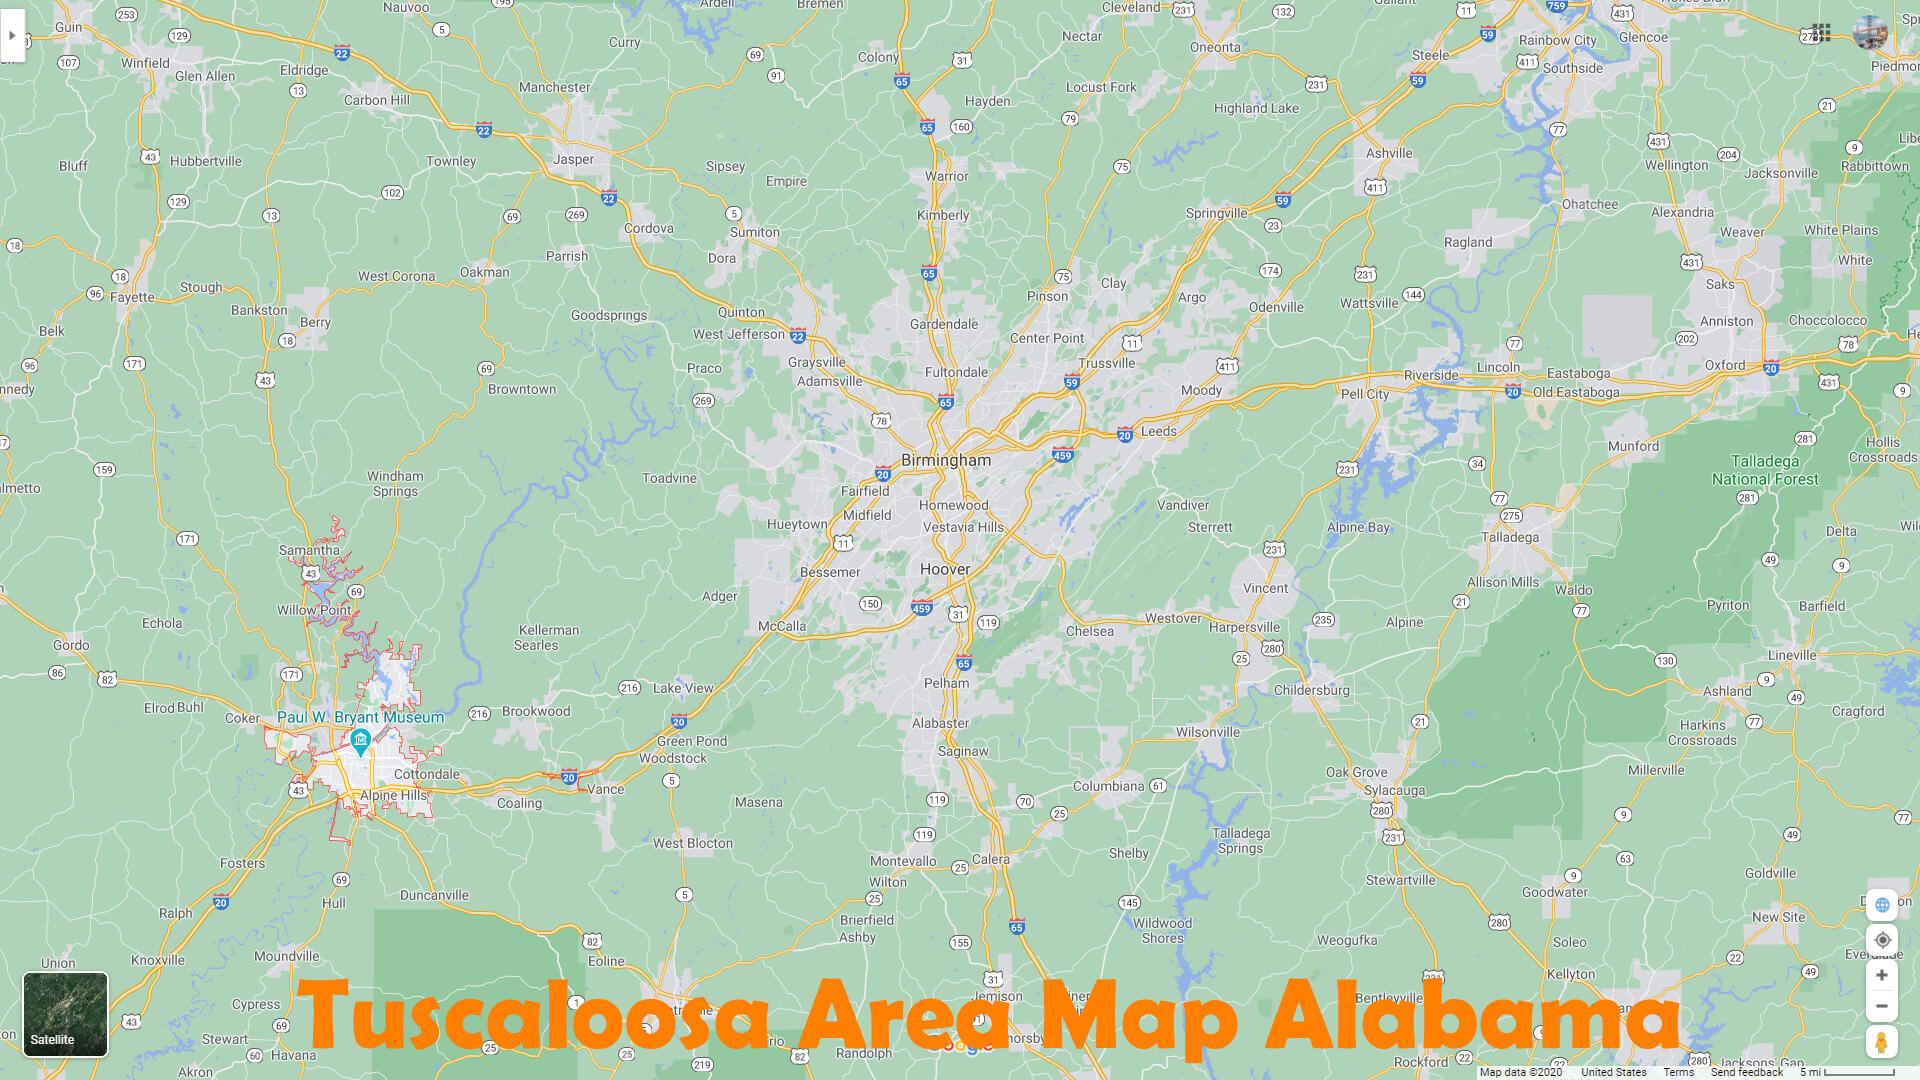 Tuscaloosa Area Map Alabama